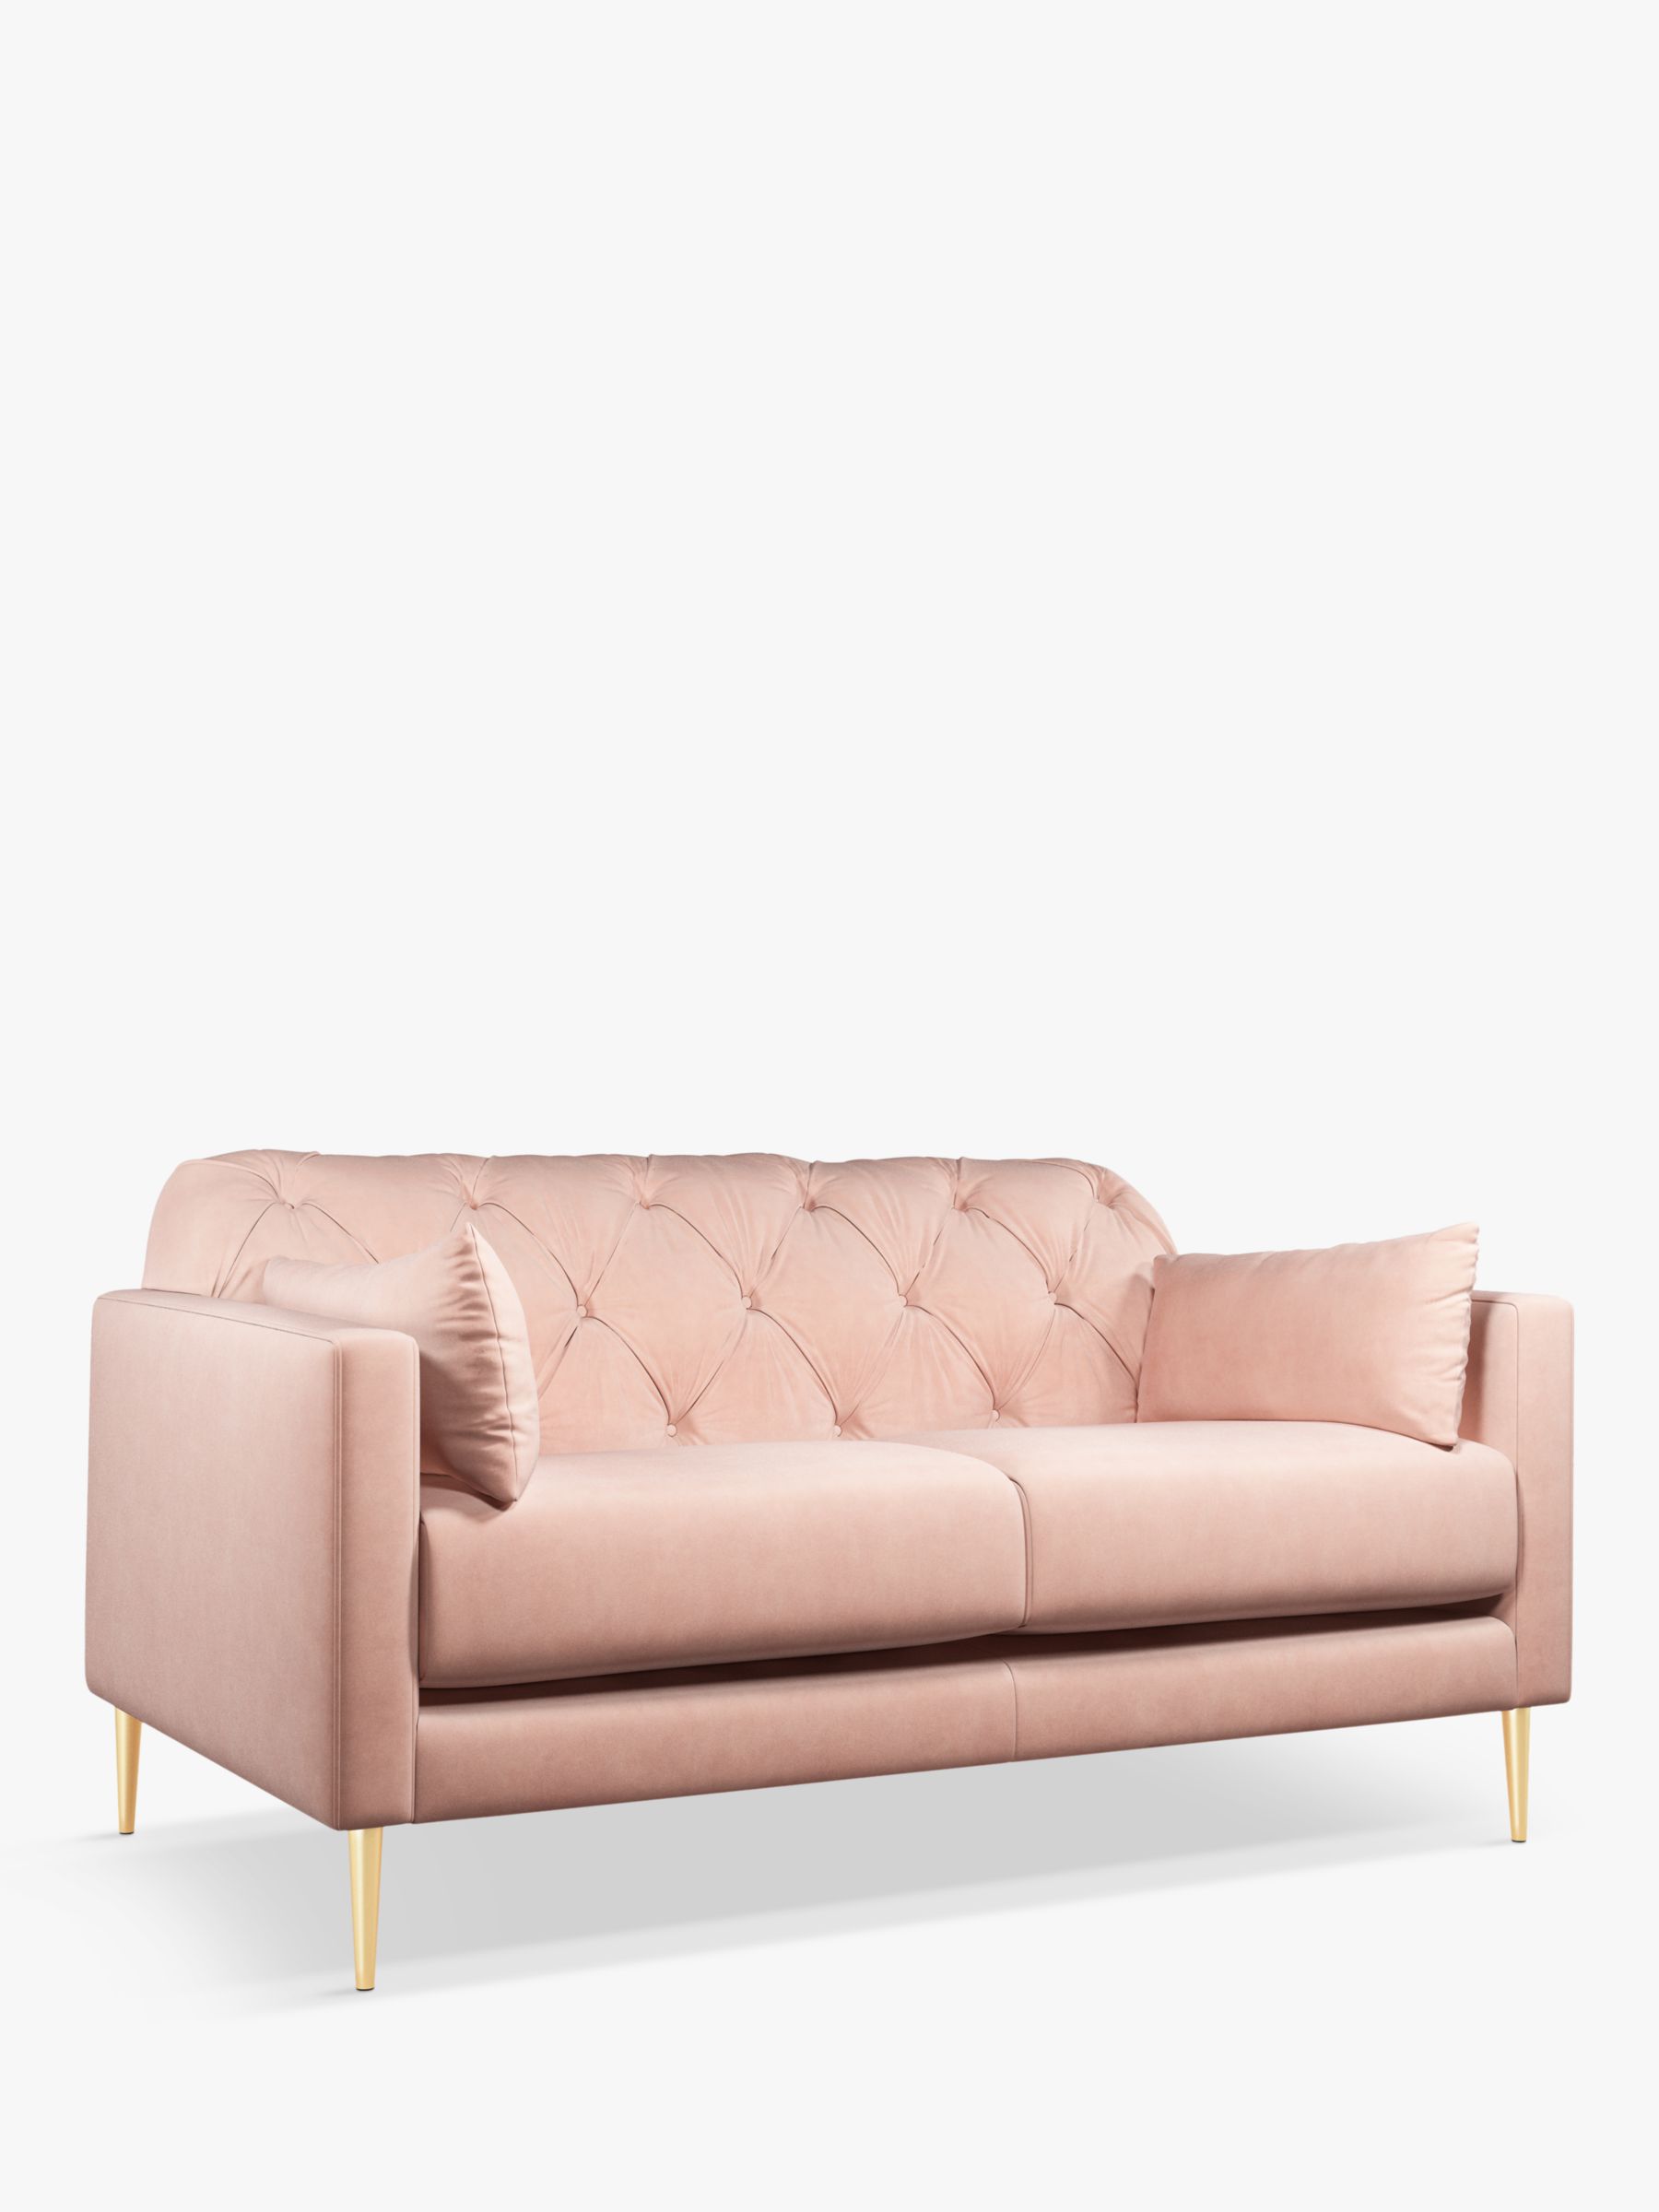 Mendel Range, Swoon Mendel Medium 2 Seater Sofa, Gold Leg, Ballet Pink Velvet